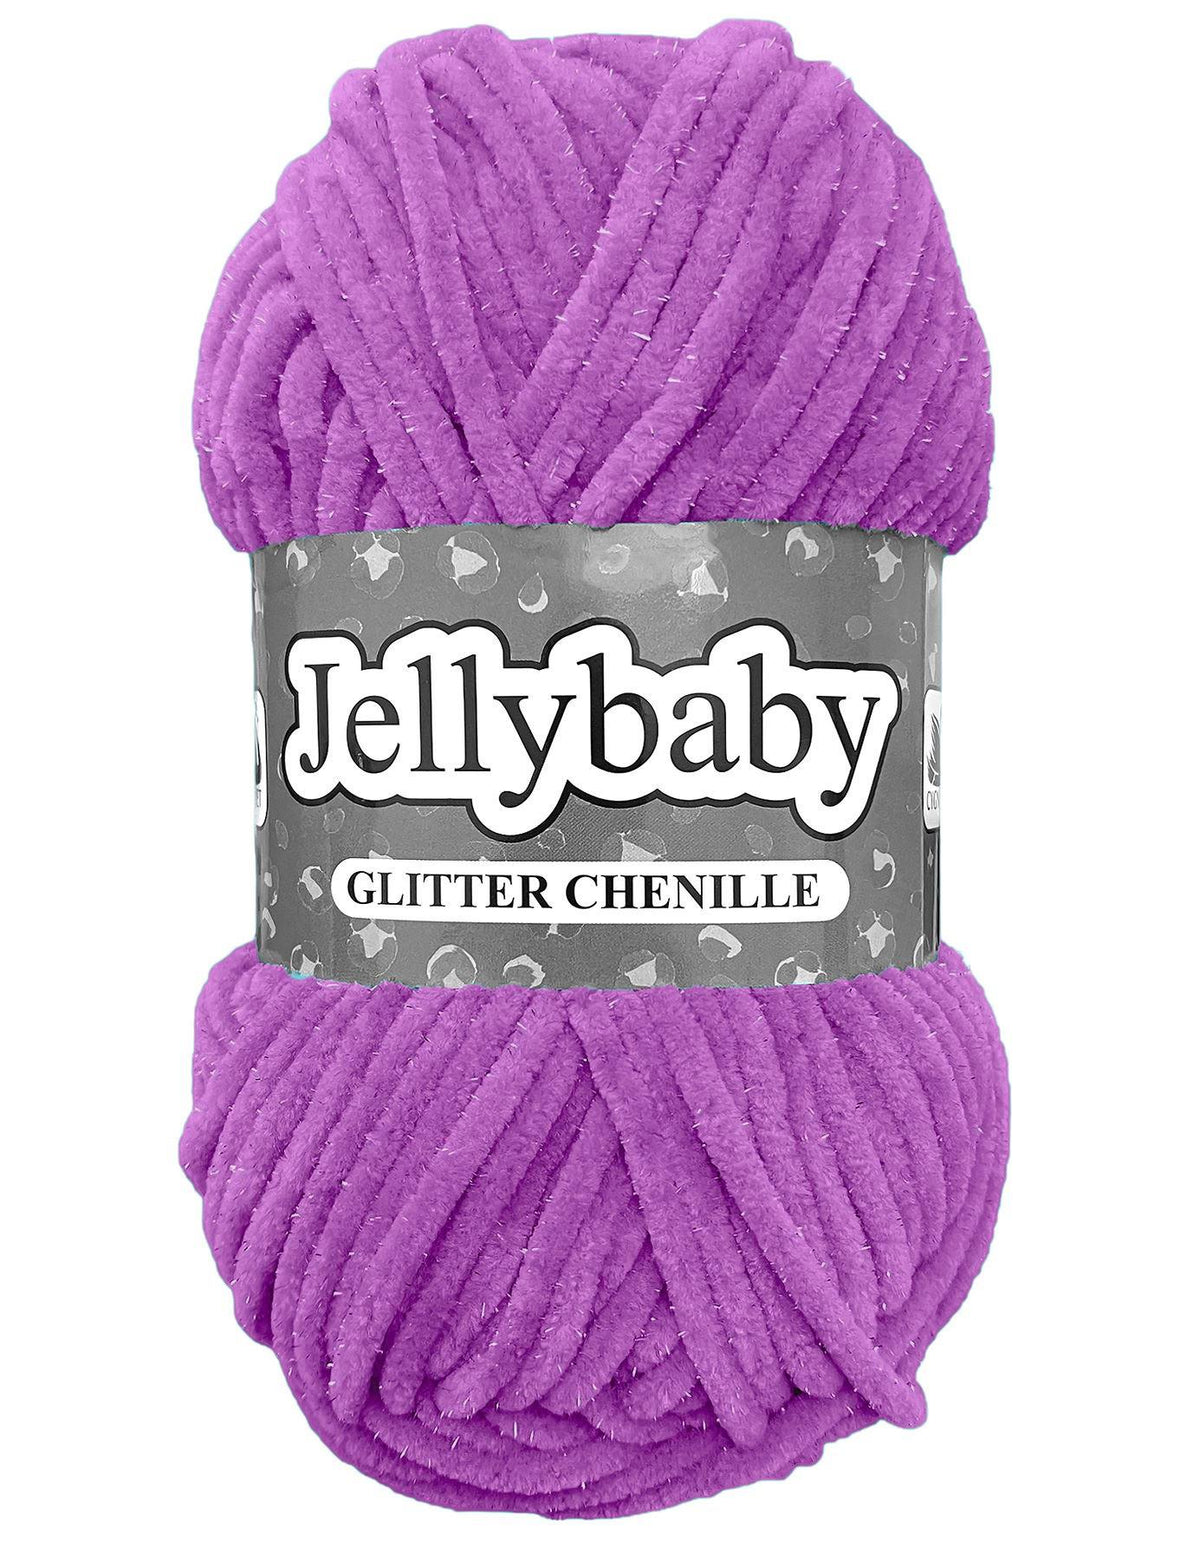 Cygnet Jellybaby Glitter Chenille French Violet (021) -100g